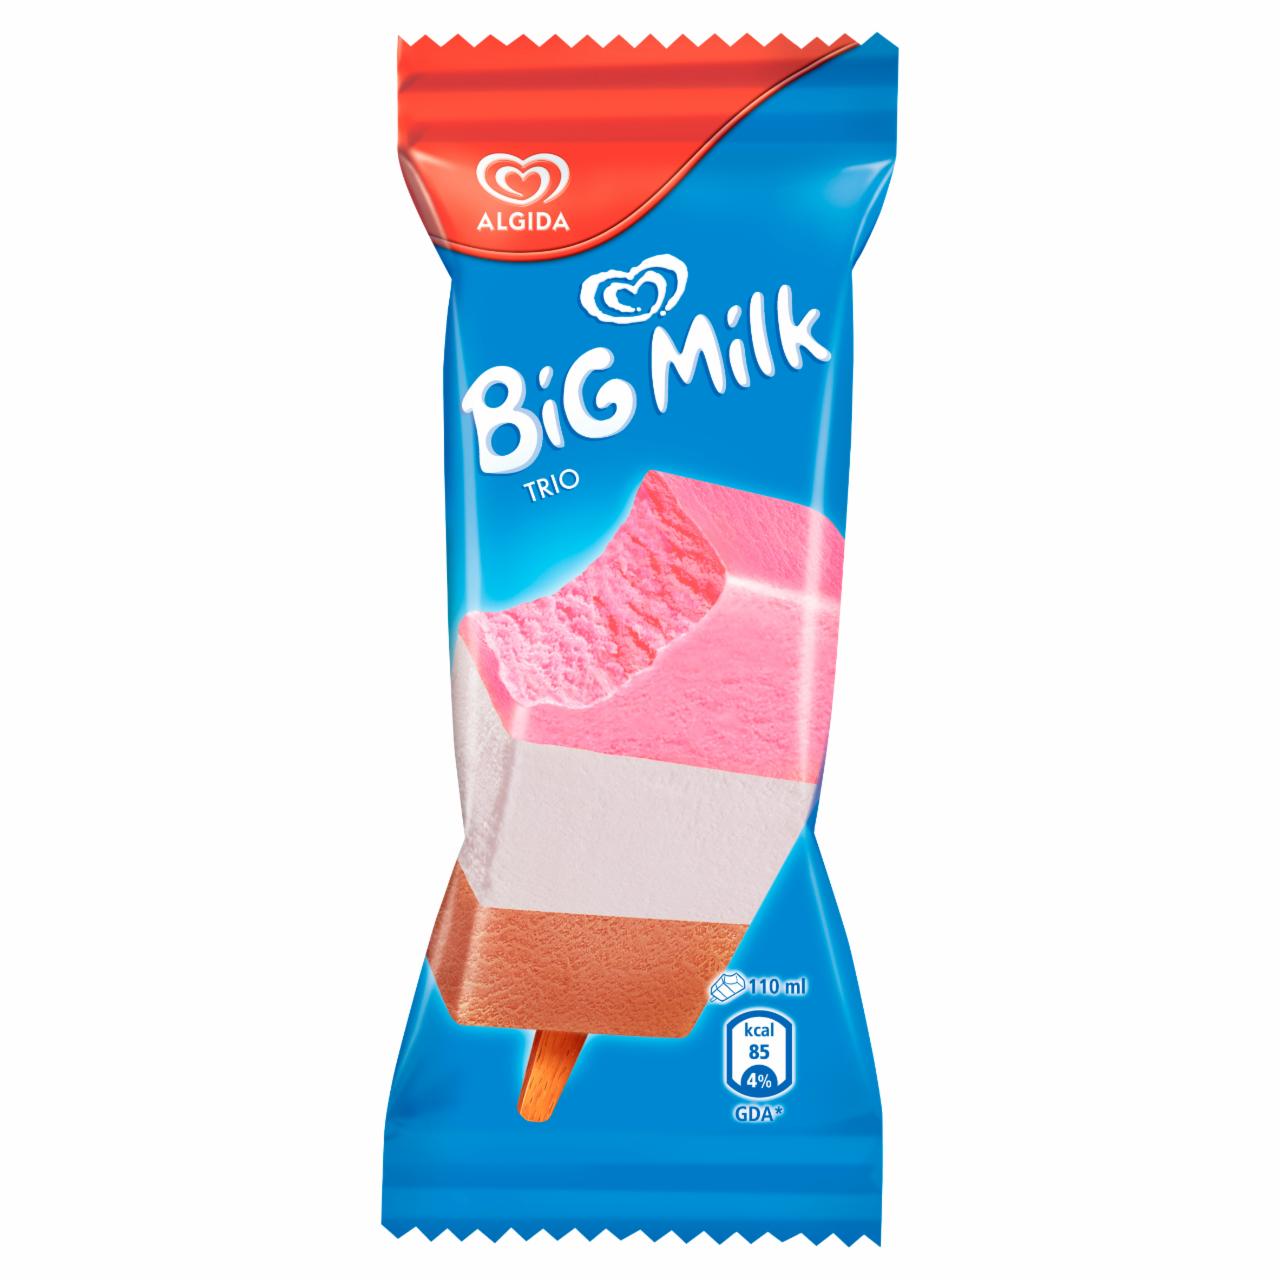 Képek - Algida Big Milk Trio eper, csokoládé és vanília jégkrém 110 ml